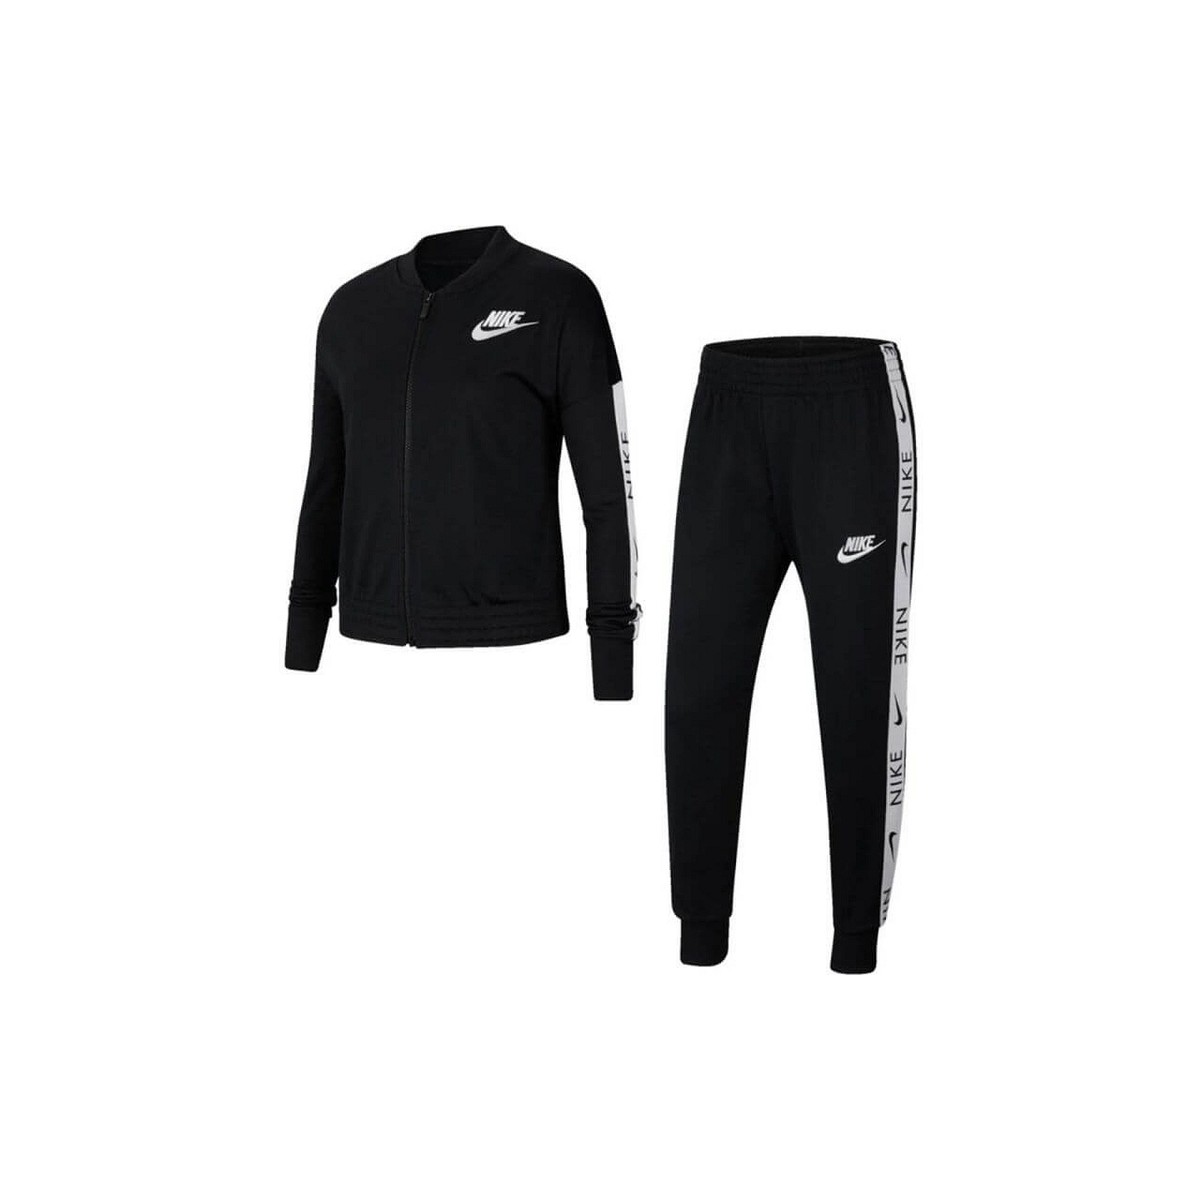 Oblečenie Dievča Súpravy vrchného oblečenia Nike G NSW TRK SUIT TRICOT Čierna